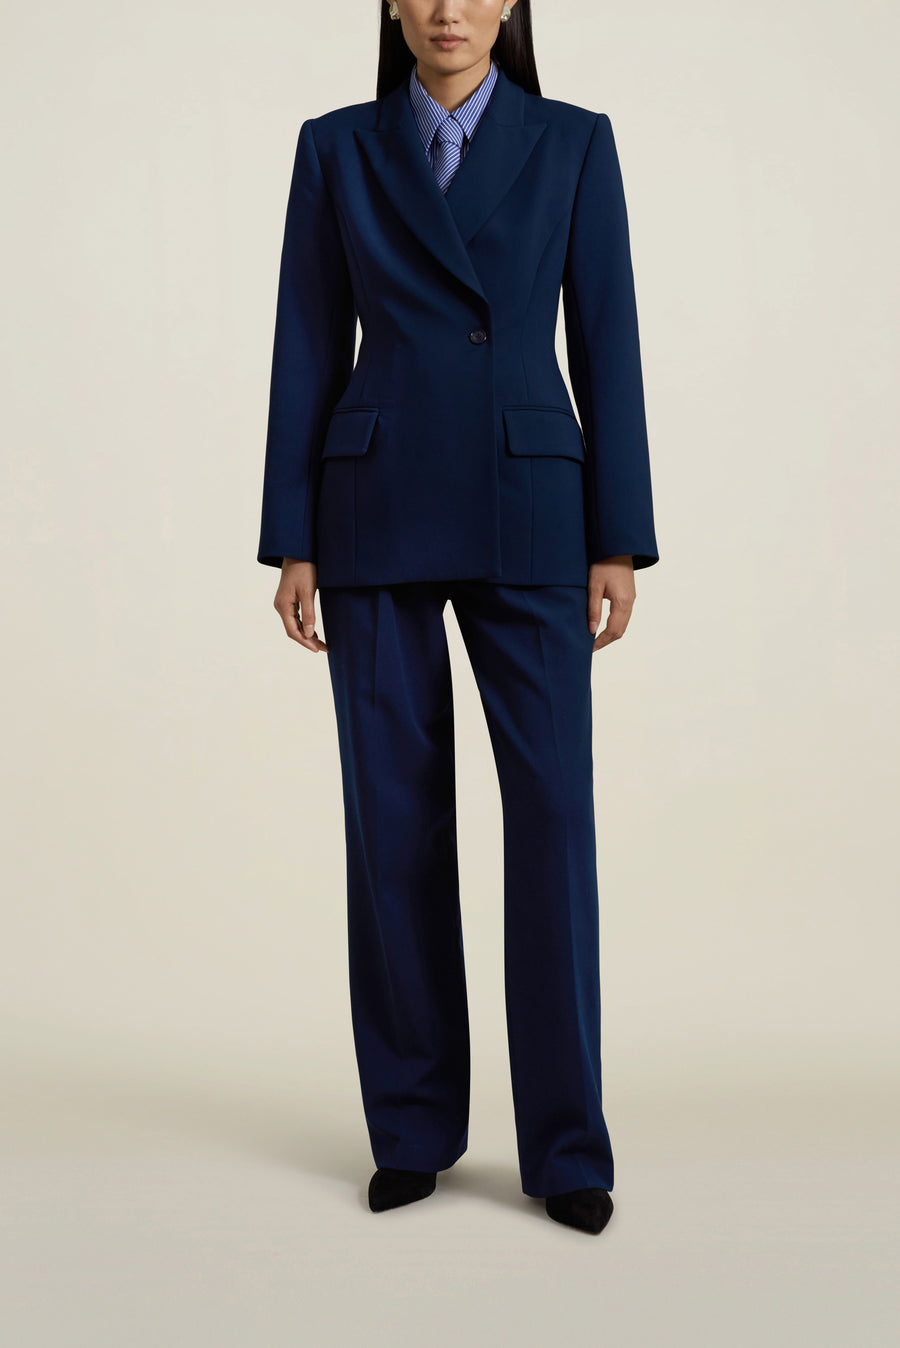  Le Suit Women's Jacket/Pant Suit, Indigo, 6 : Clothing